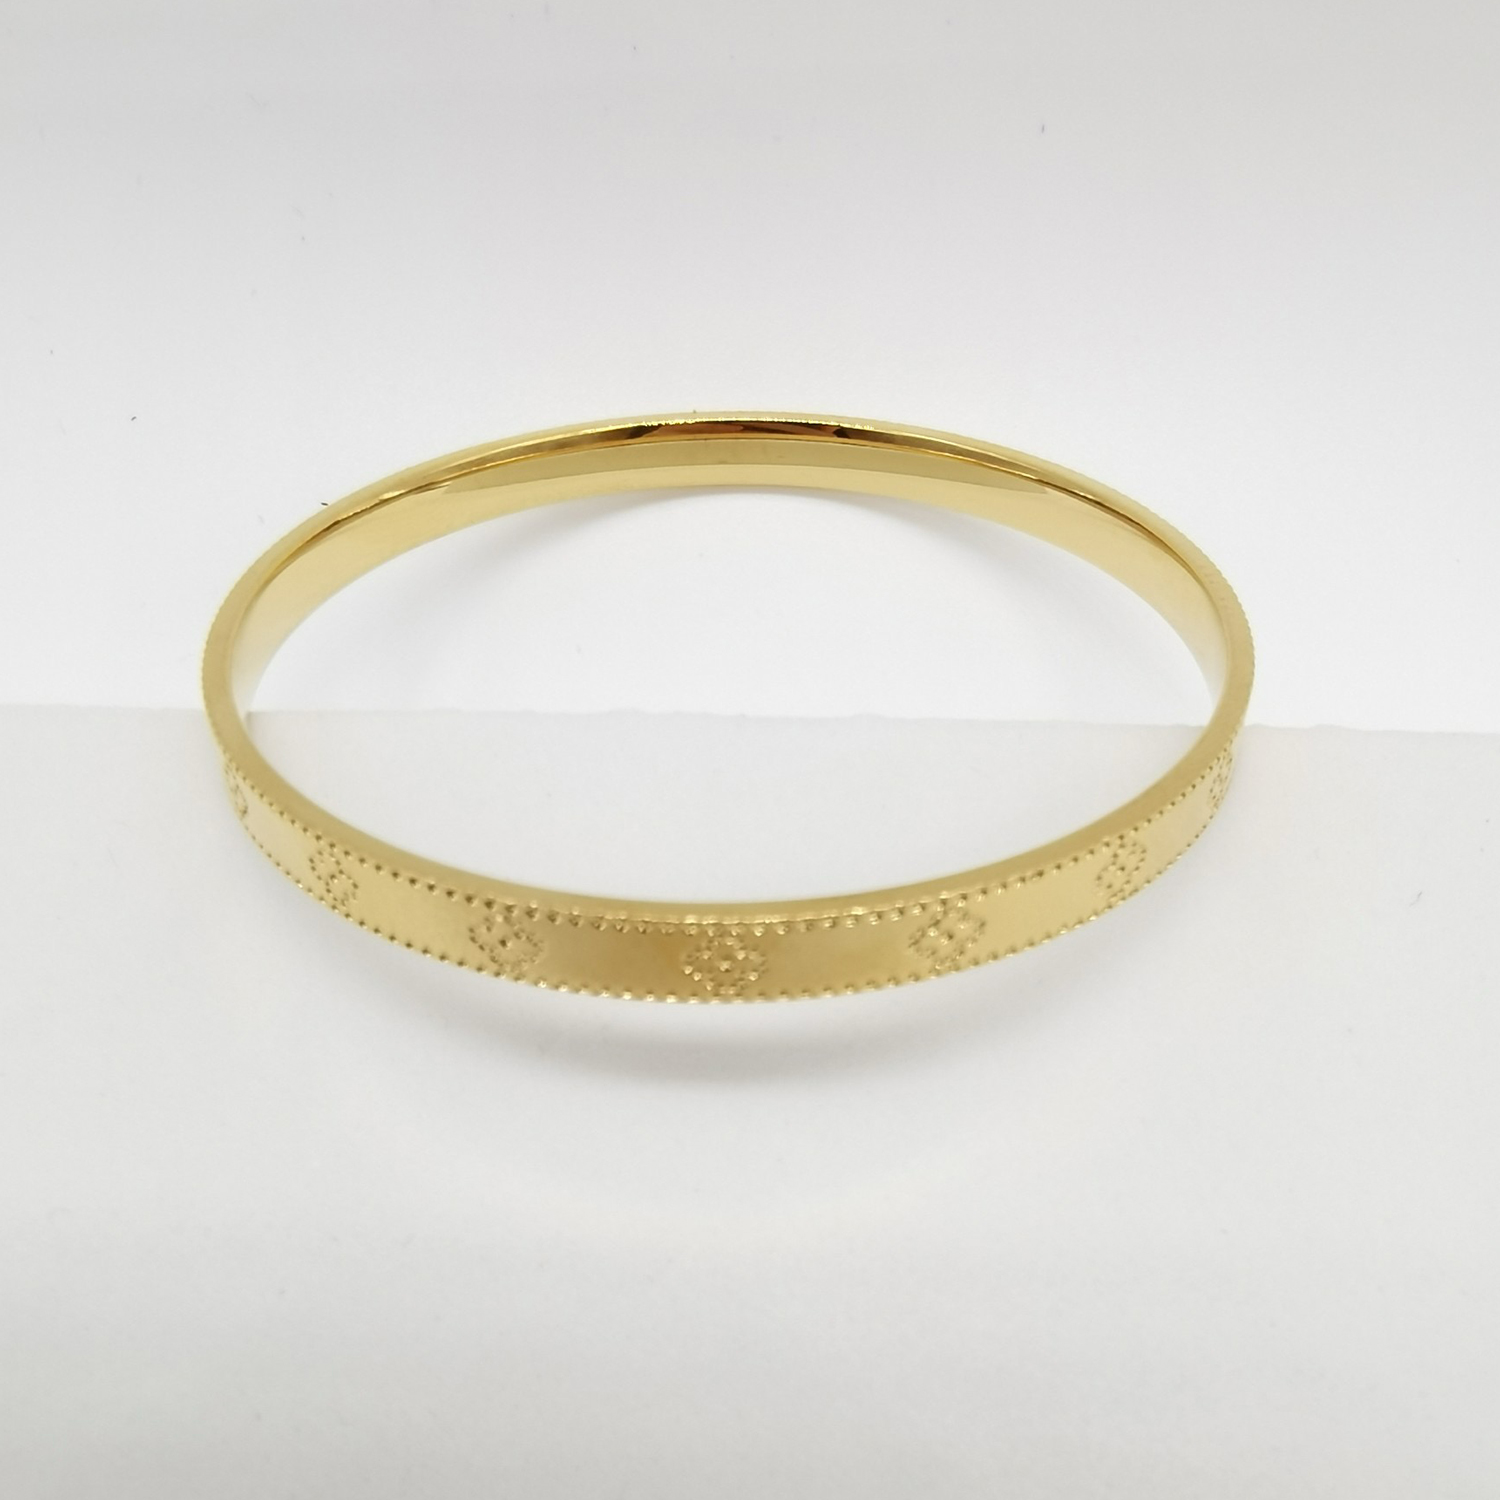 Alluvial gold vacuum electroplating 24K gold four-leaf clover bracelet